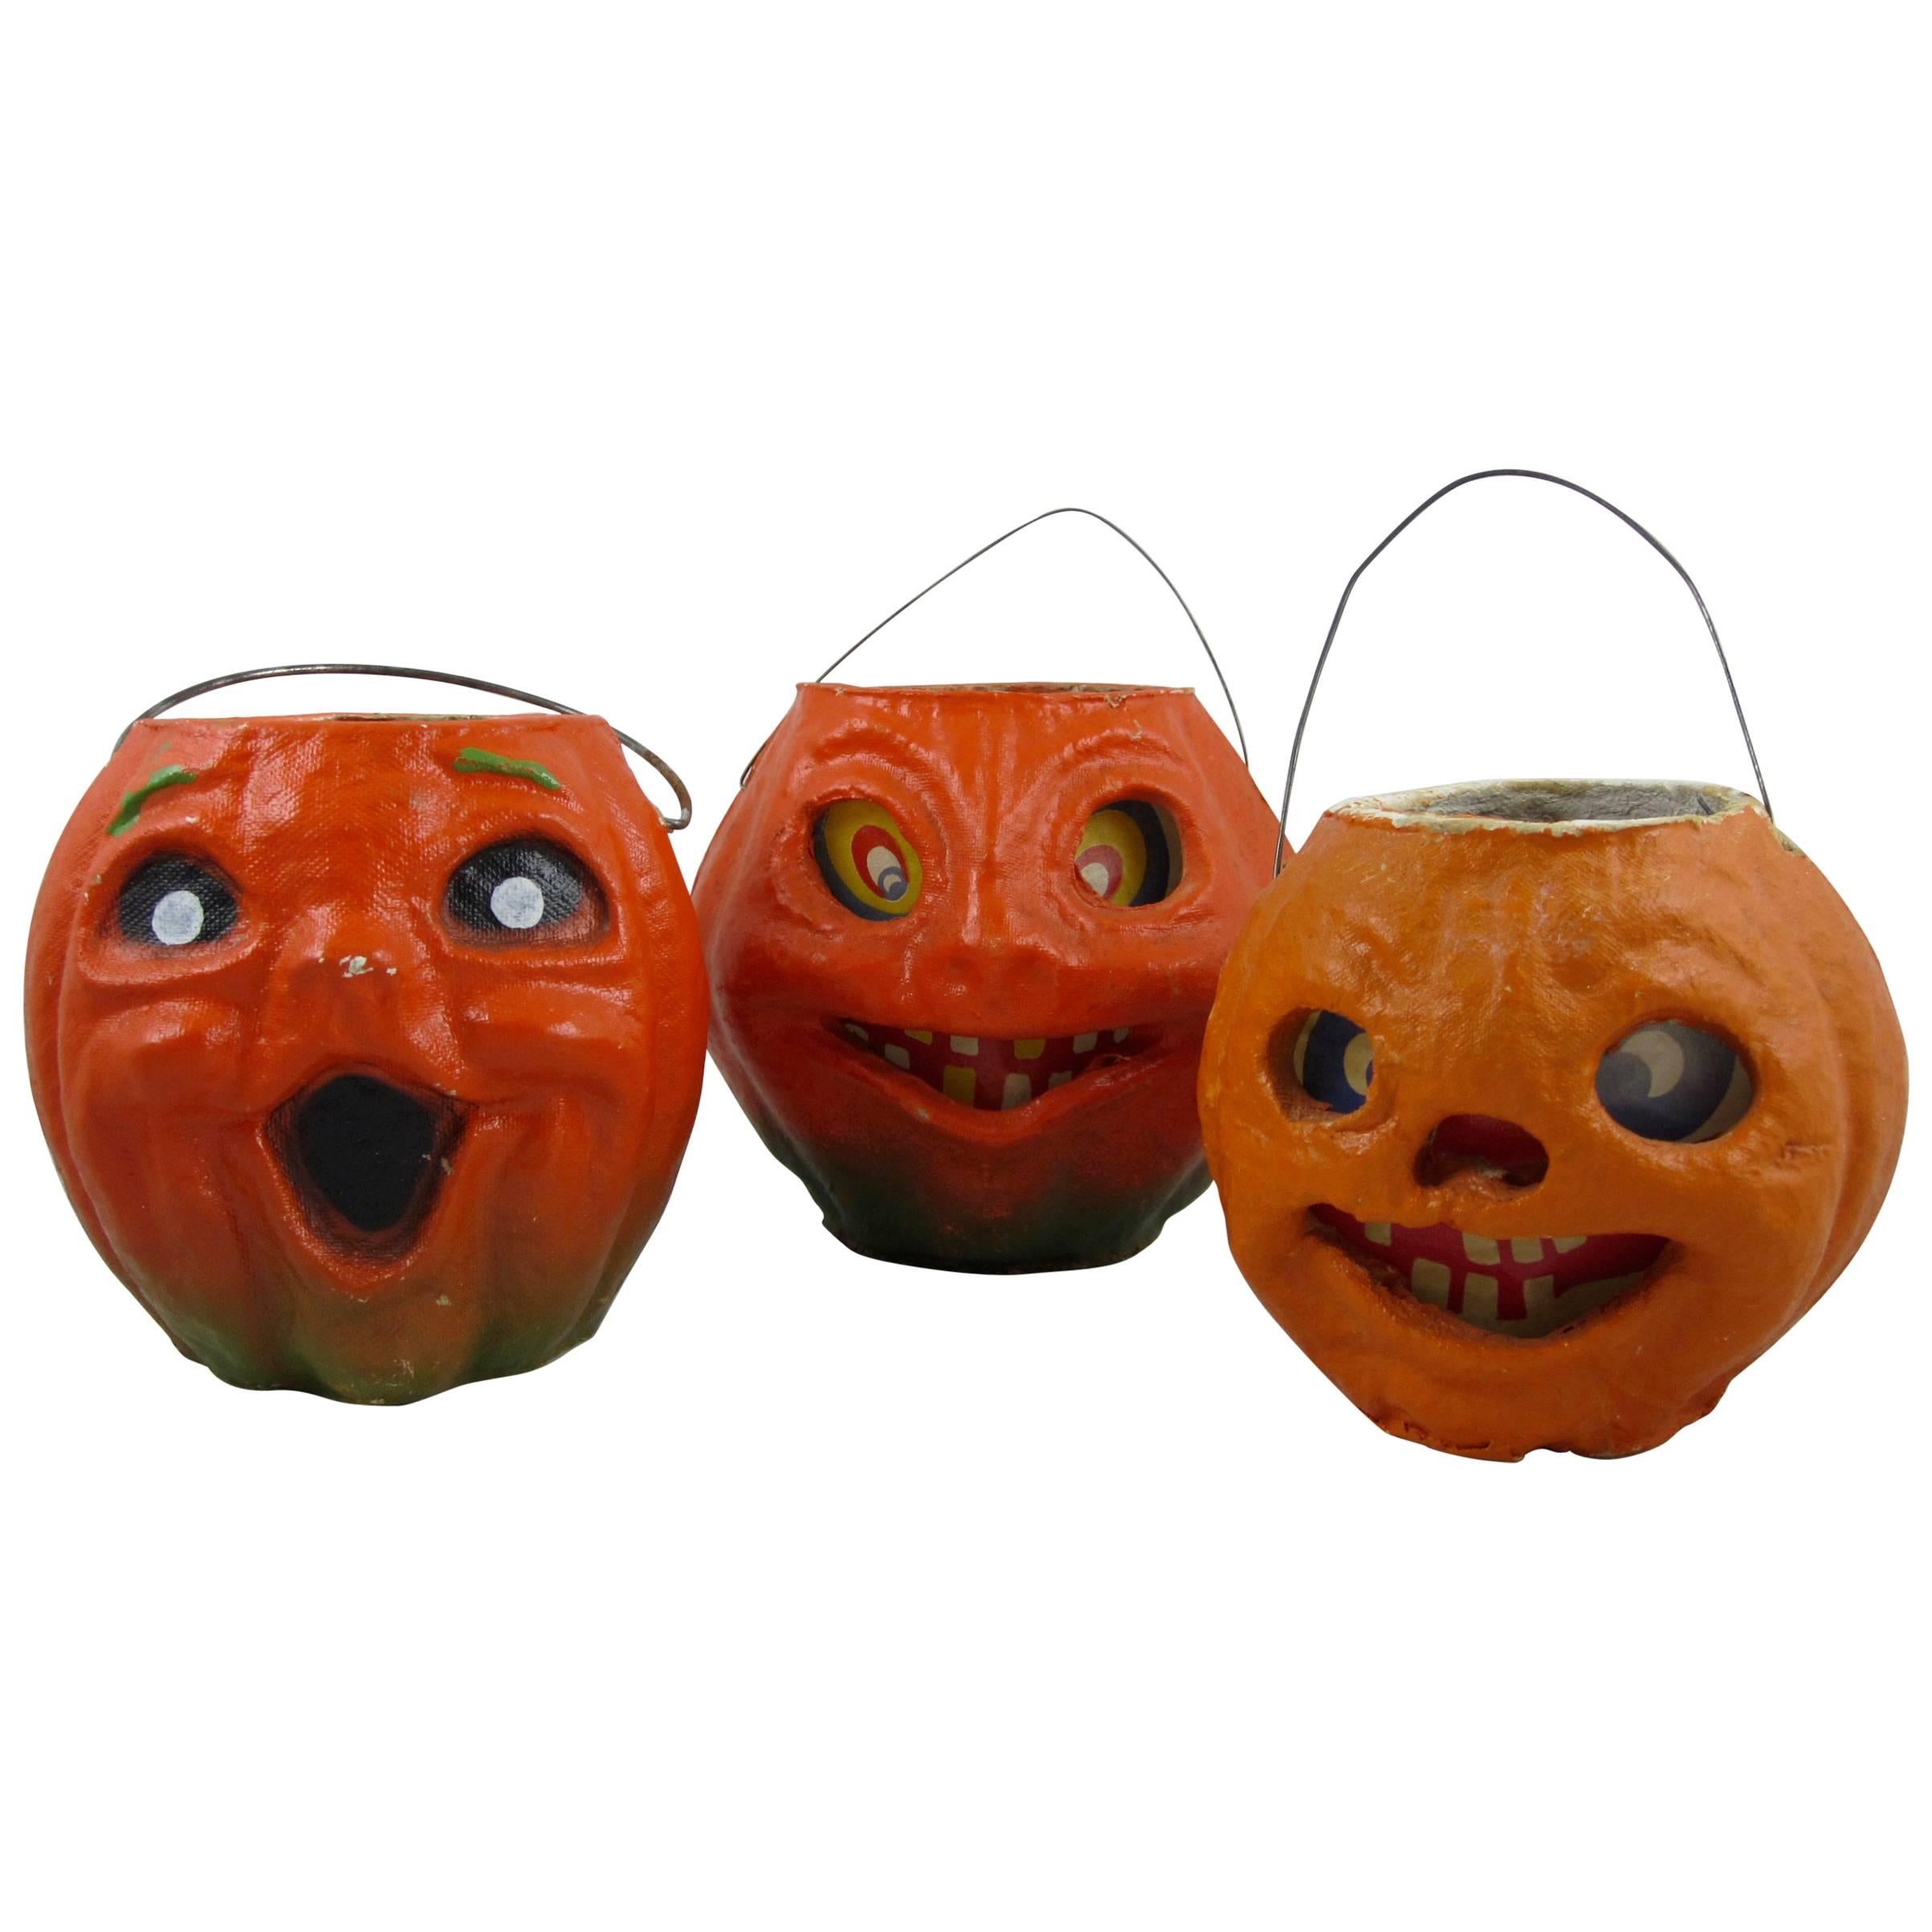 1930s Pulp Papier-Mâché Halloween Jack-o-lantern Pumpkins, Set of Three